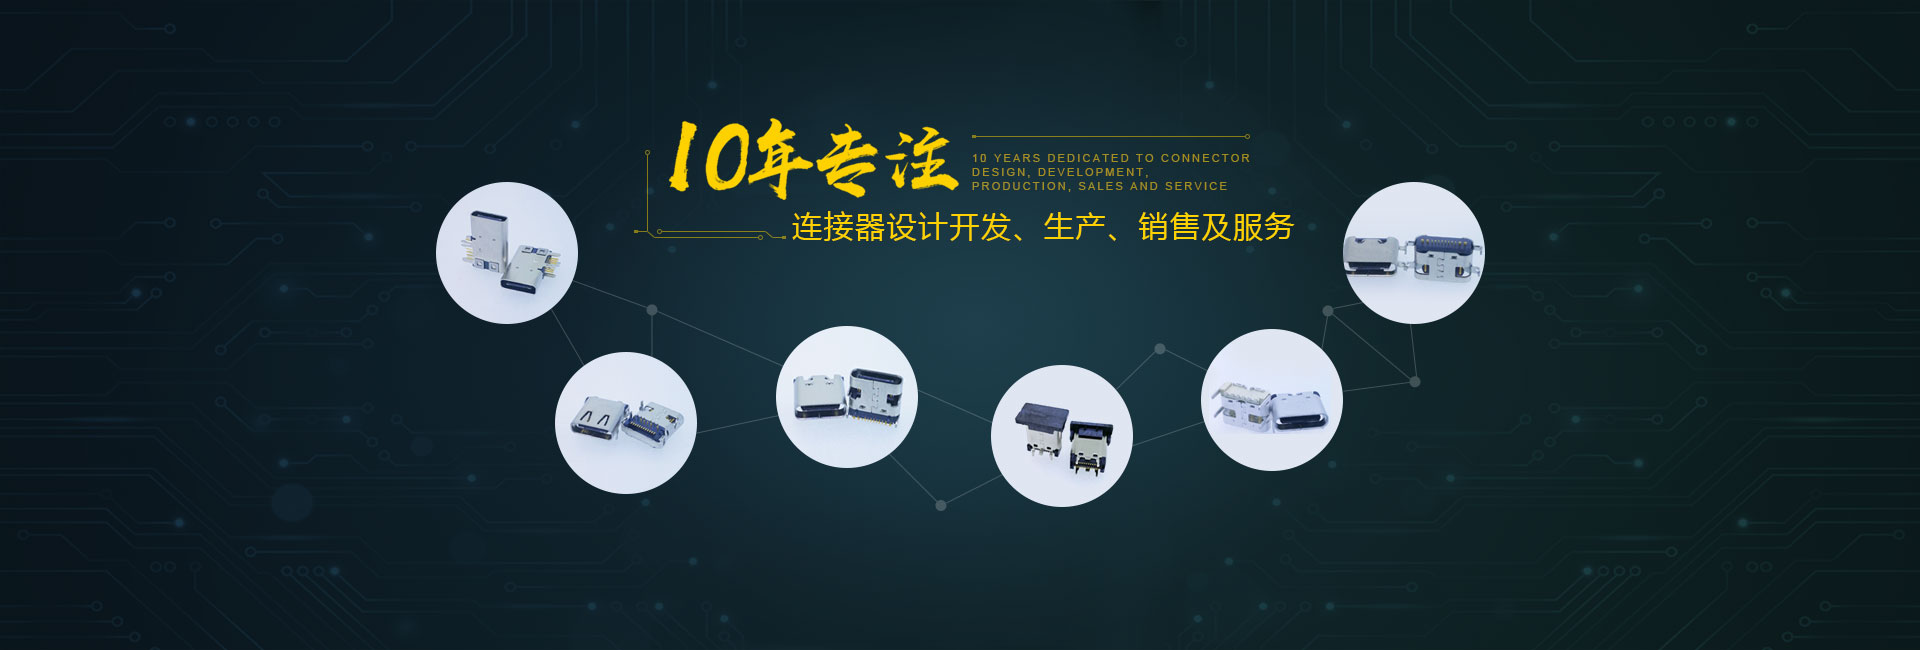 深圳市新升华电子器件有限公司 